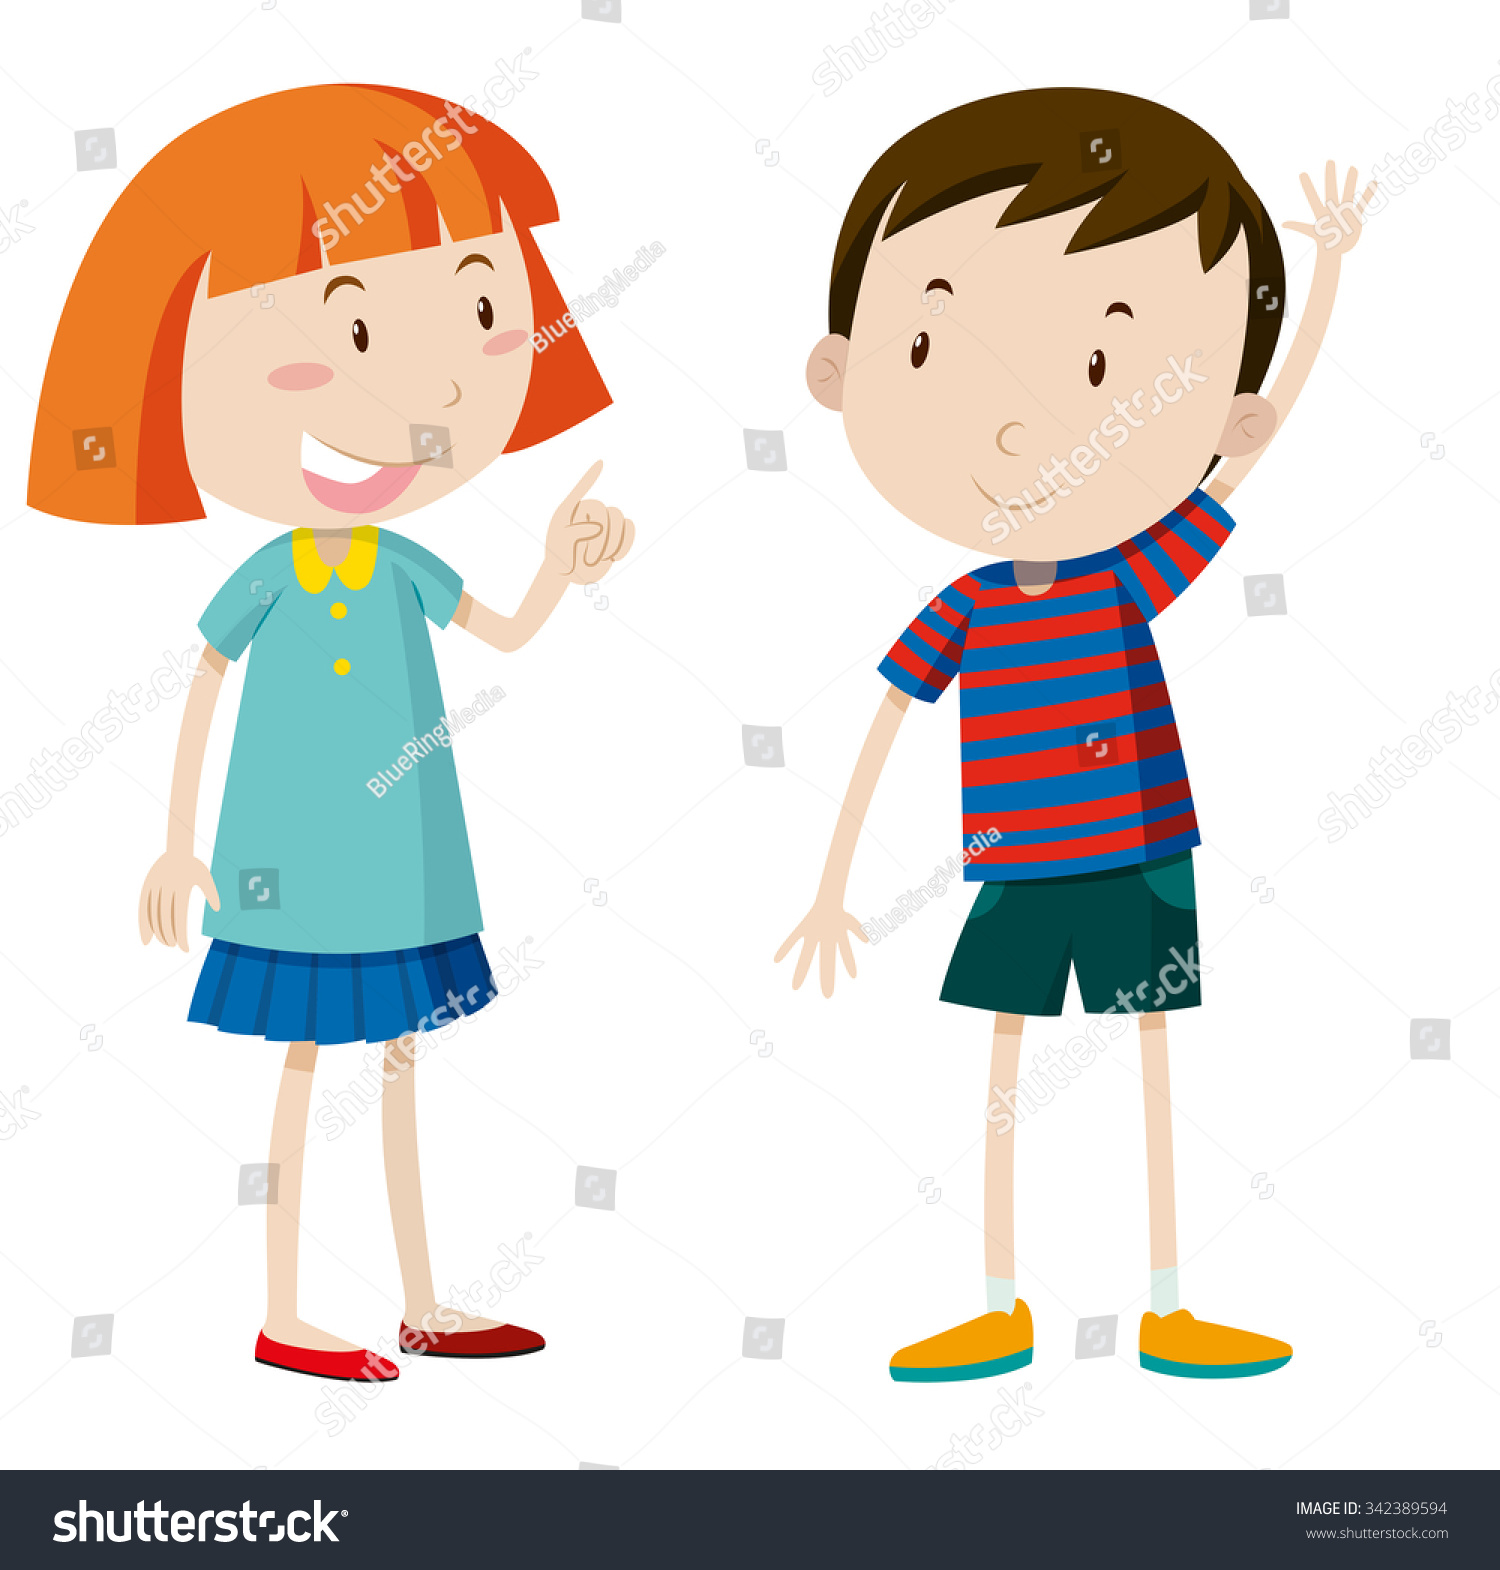 Girl Boy Chatting Illustration Stock Vector 342389594 - Shutterstock